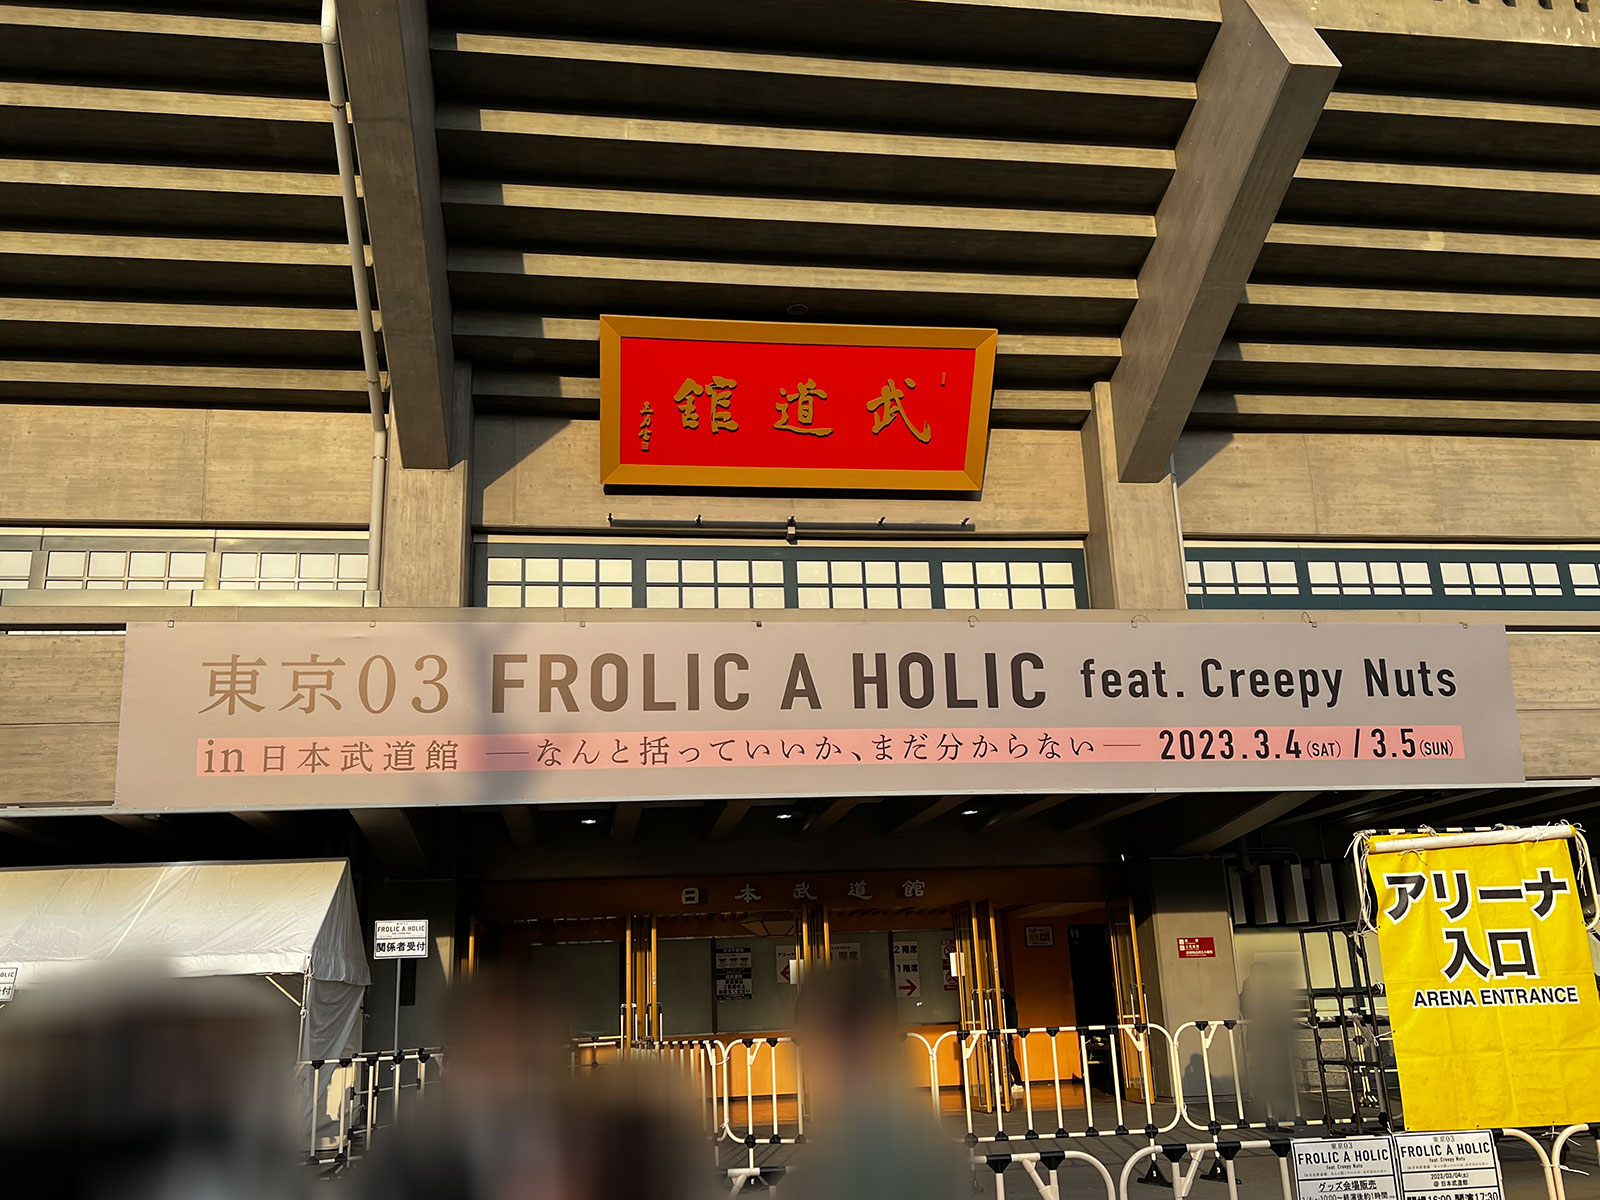 『東京03 FROLIC A HOLIC feat. Creepy Nuts in 日本武道館　なんと括っていいか、まだ分からない』の大看板が掲げられた日本武道館正面口。